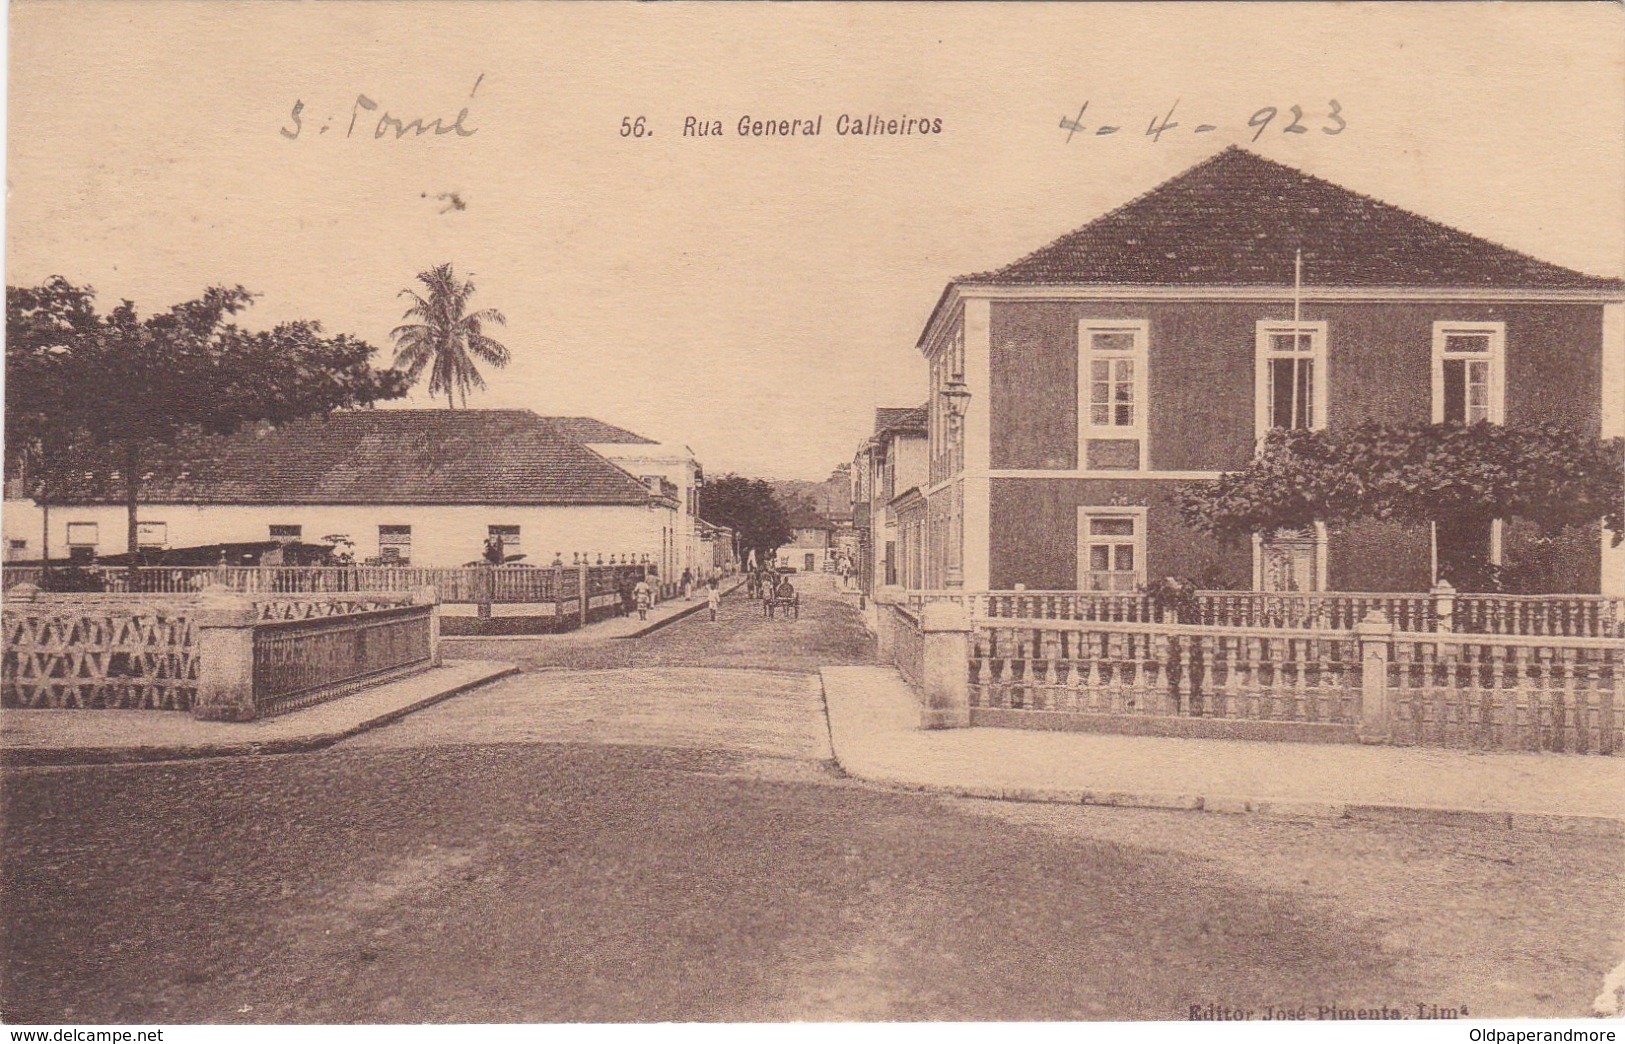 POSTCARD PORTUGAL - OLD COLONY - SÃO TOMÉ E  PRINCIPE - RUA GENERAL CALHEIROS   , S. THOMÉ - Sao Tome Et Principe